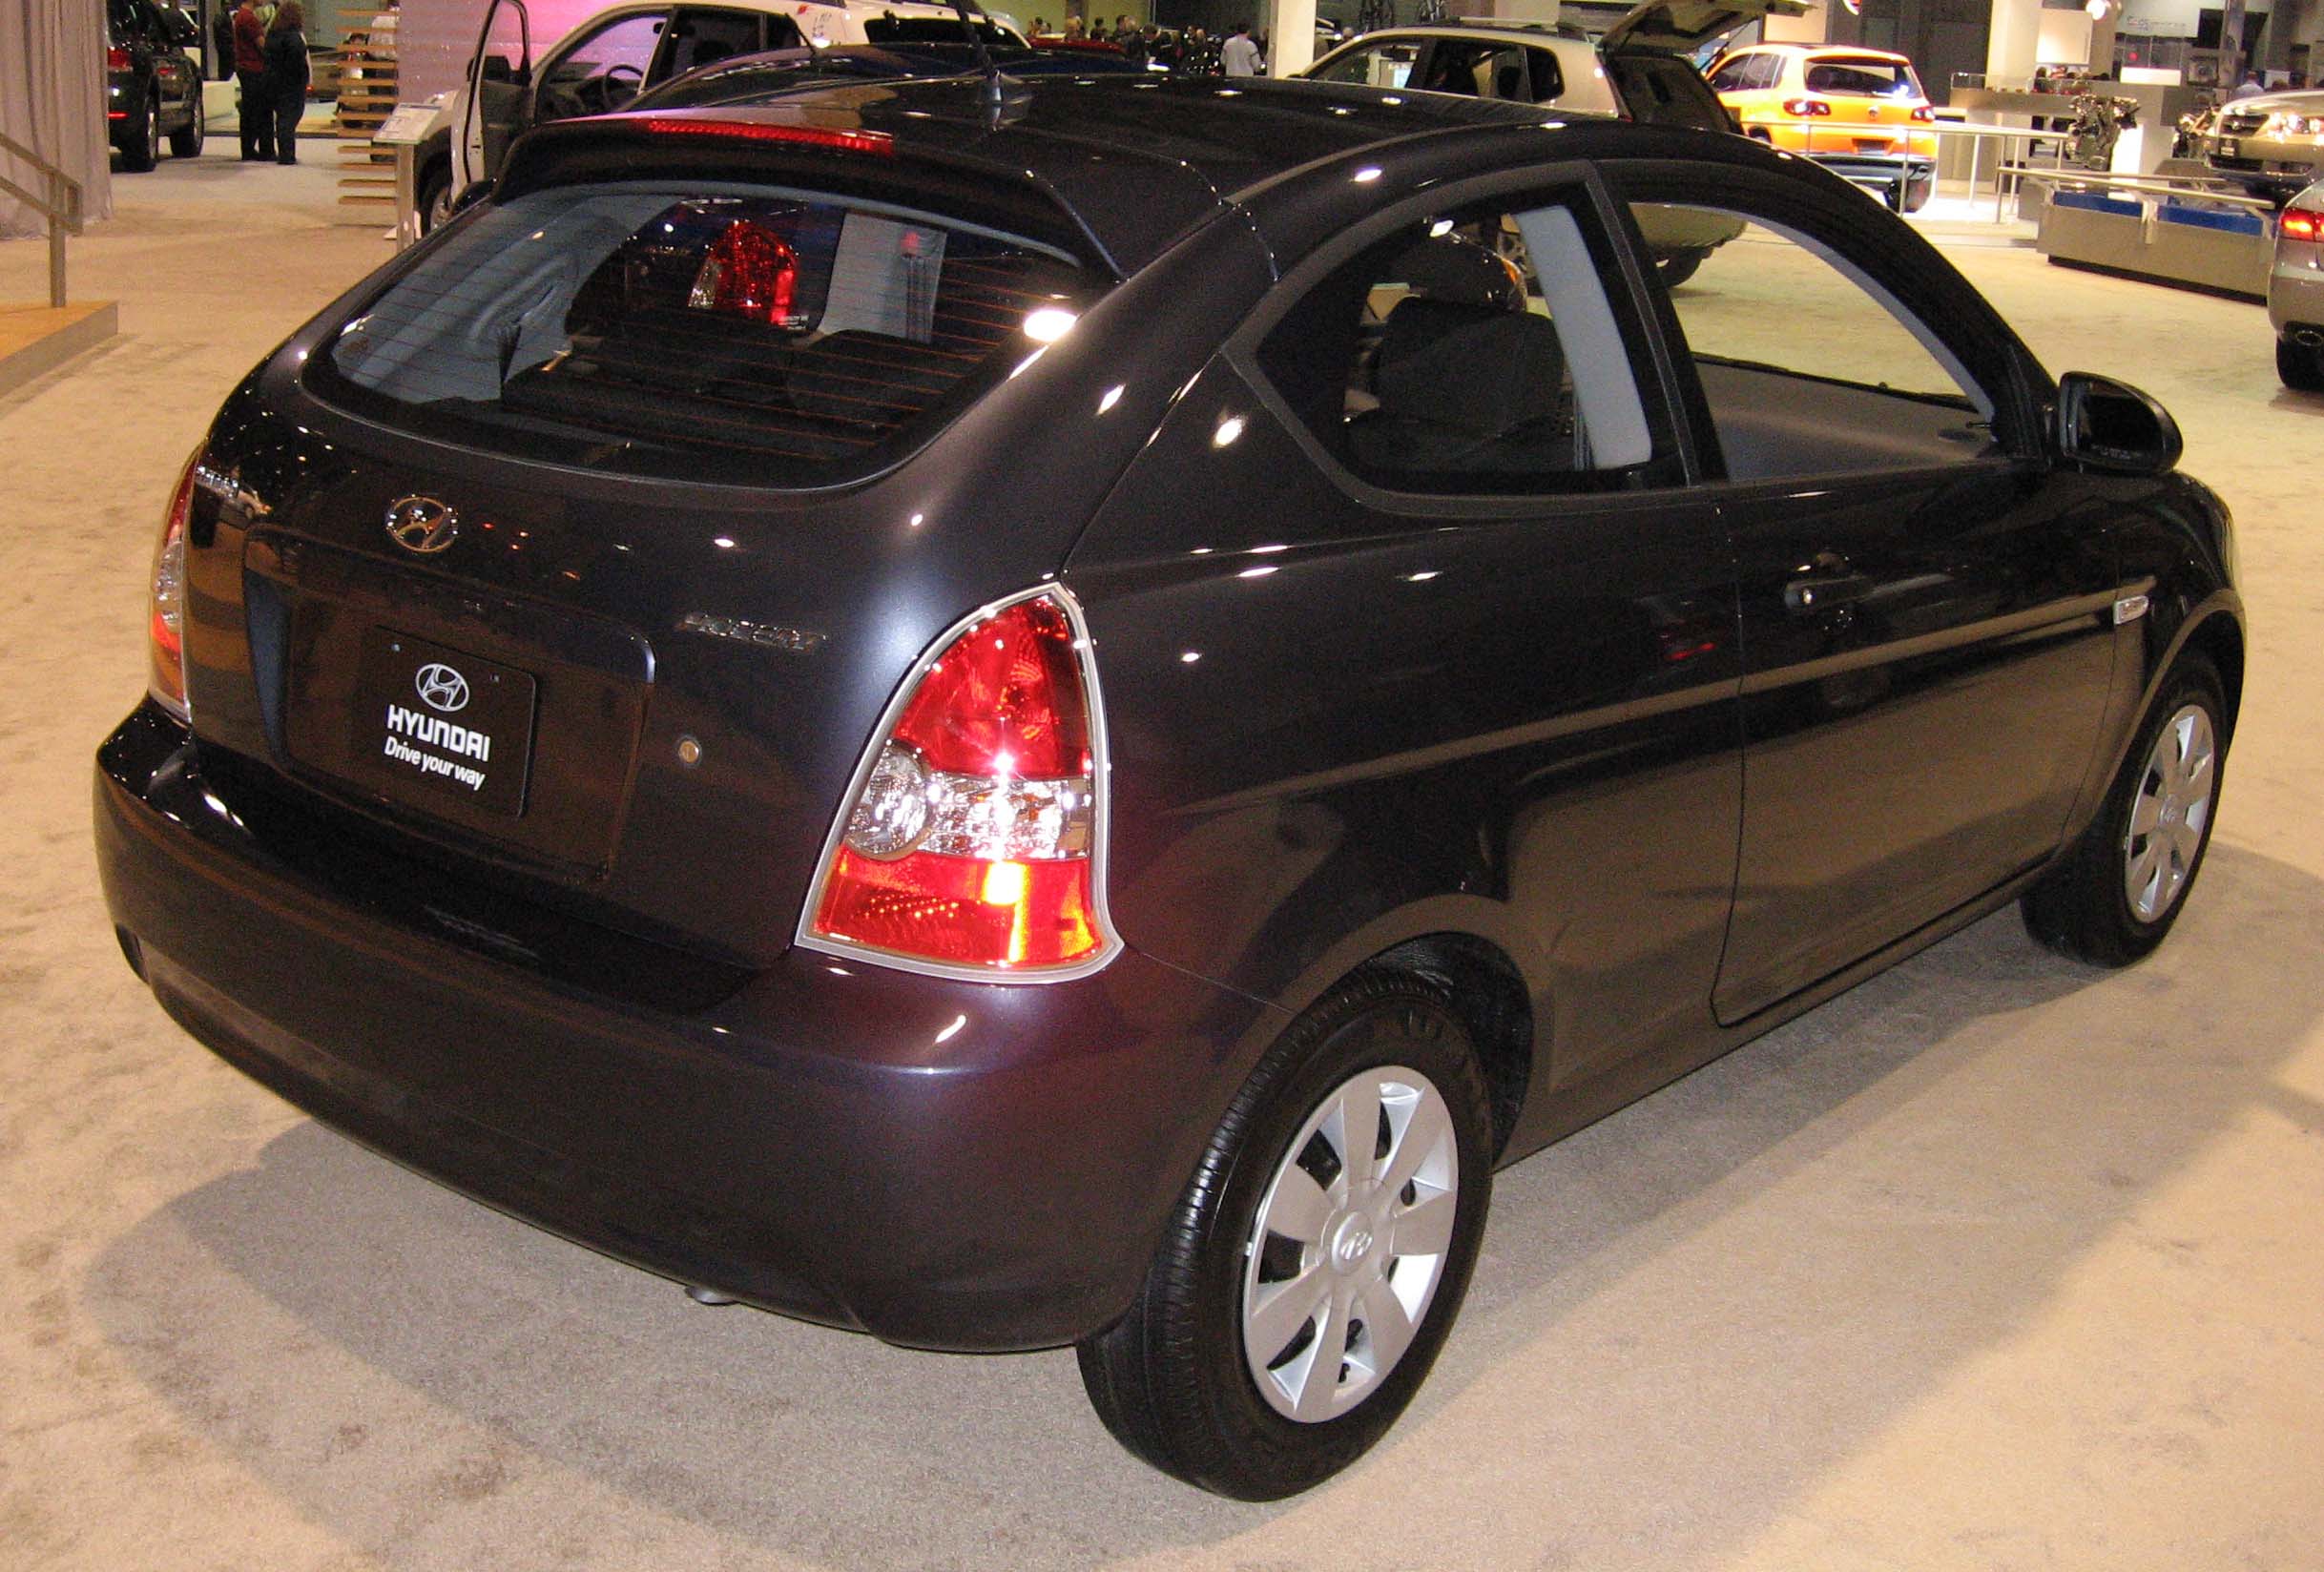 Hyundai Accent hatchback